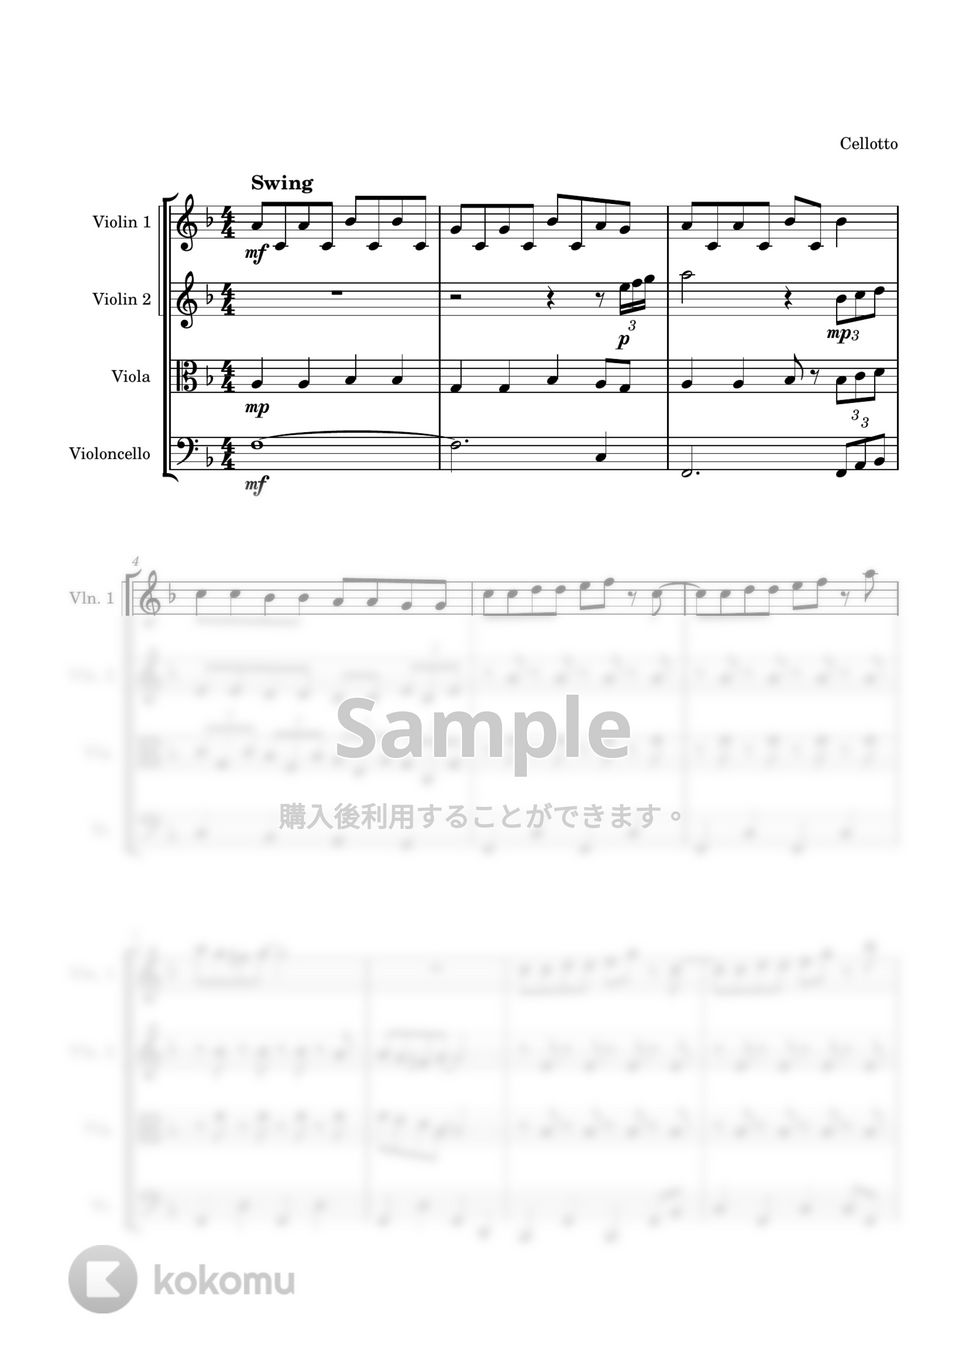 ドラえもん - 夢をかなえてドラえもん (弦楽四重奏) by Cellotto